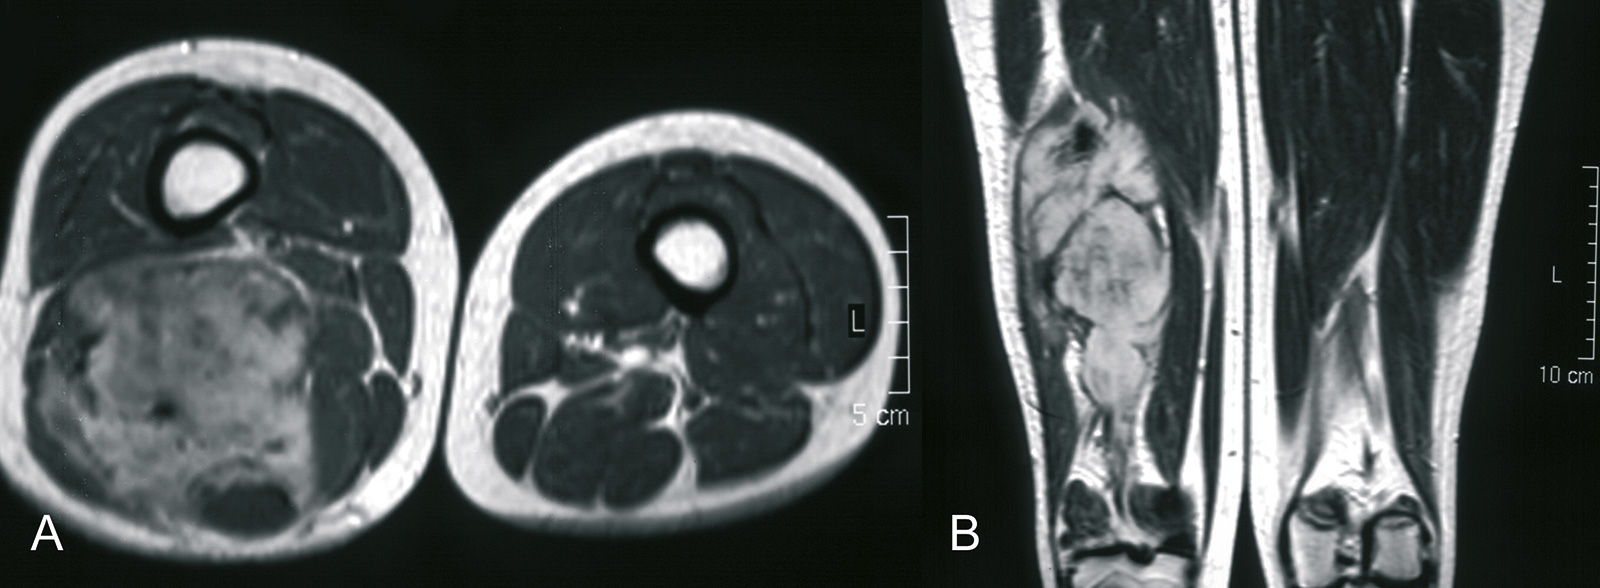 Abb. 8-56: Aggressive Fibromatose im Bereich des dorsalen Oberschenkels (Eigentum des Instituts für Klinische Radiologie der Universität Münster)